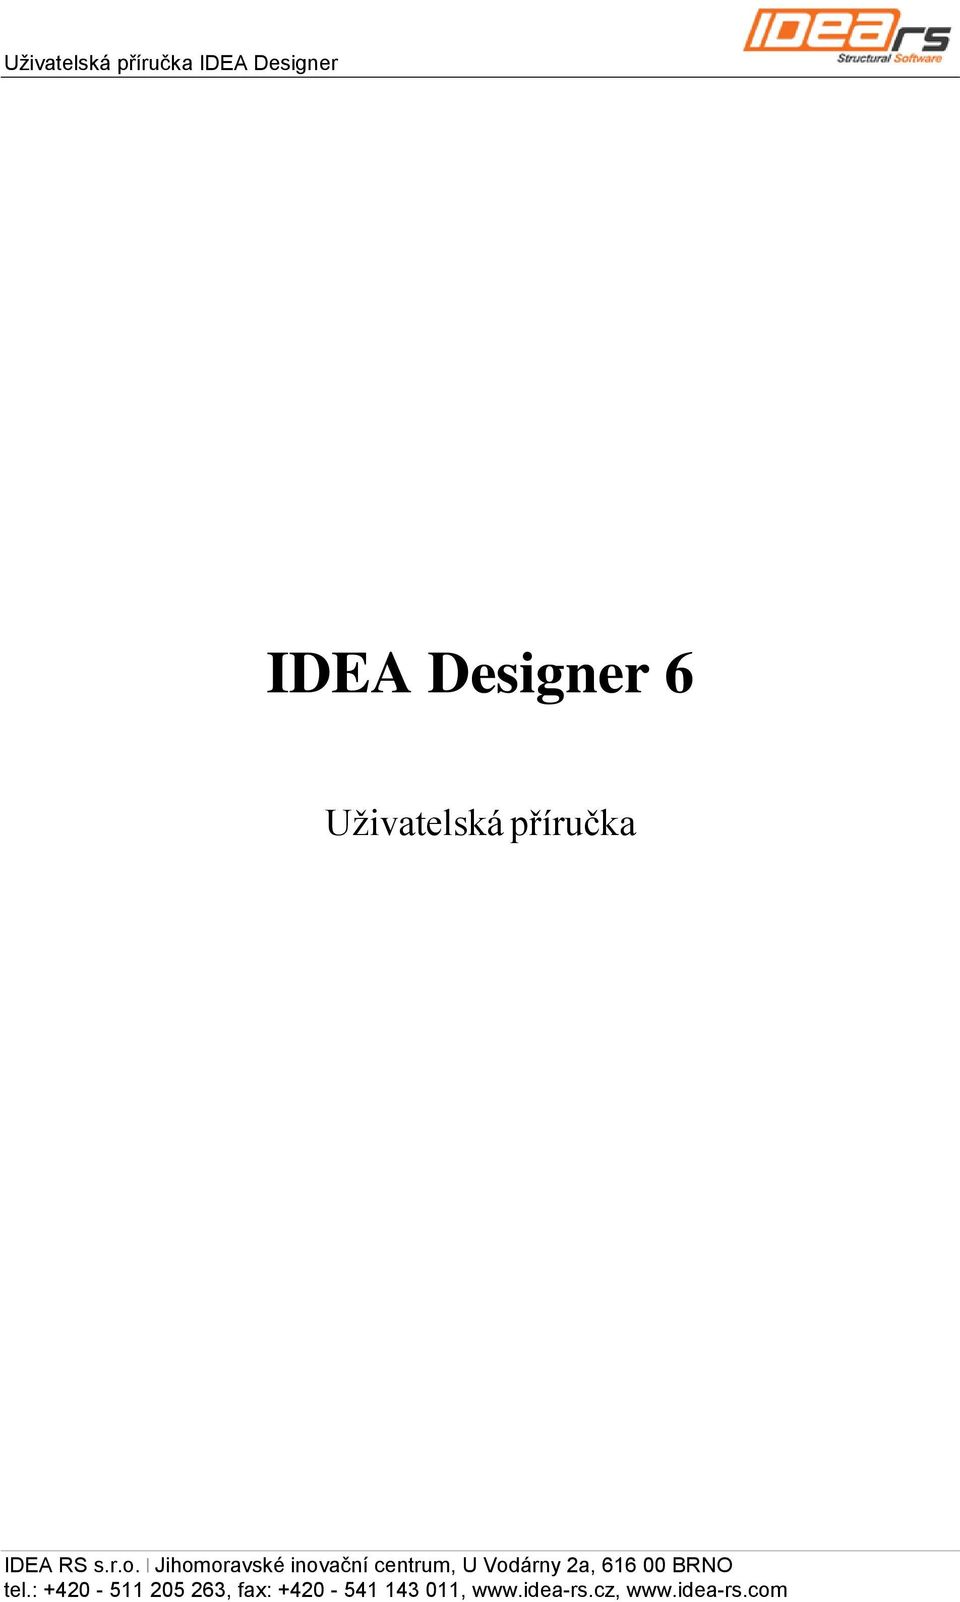 Designer IDEA